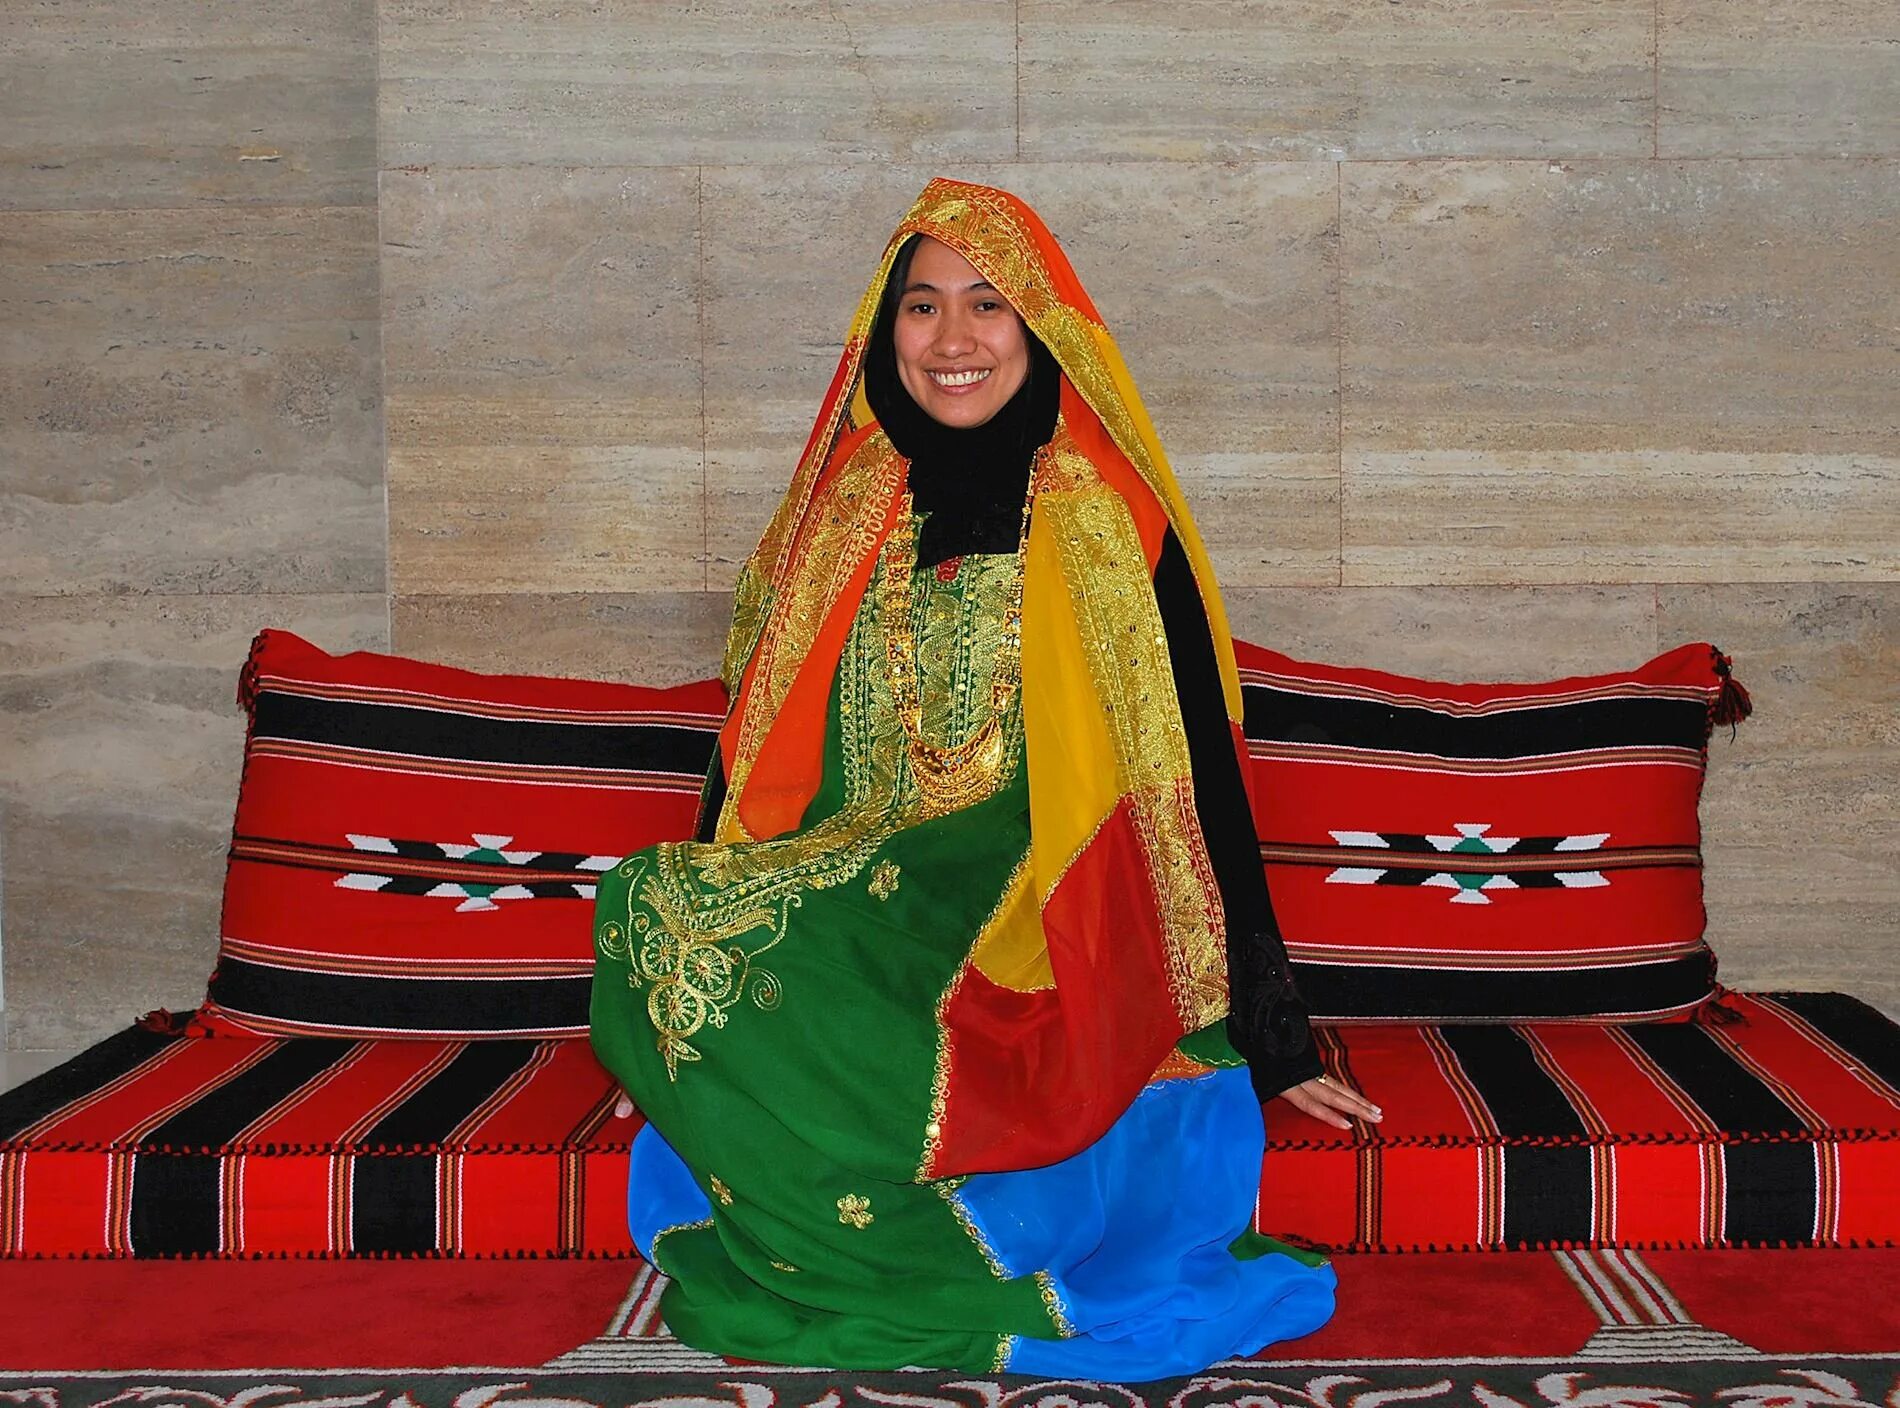 Иран арабские эмираты. Национальный костюм езидов. Оман национальный костюм. Иранский нац костюм. Бахрейн Национальная одежда.